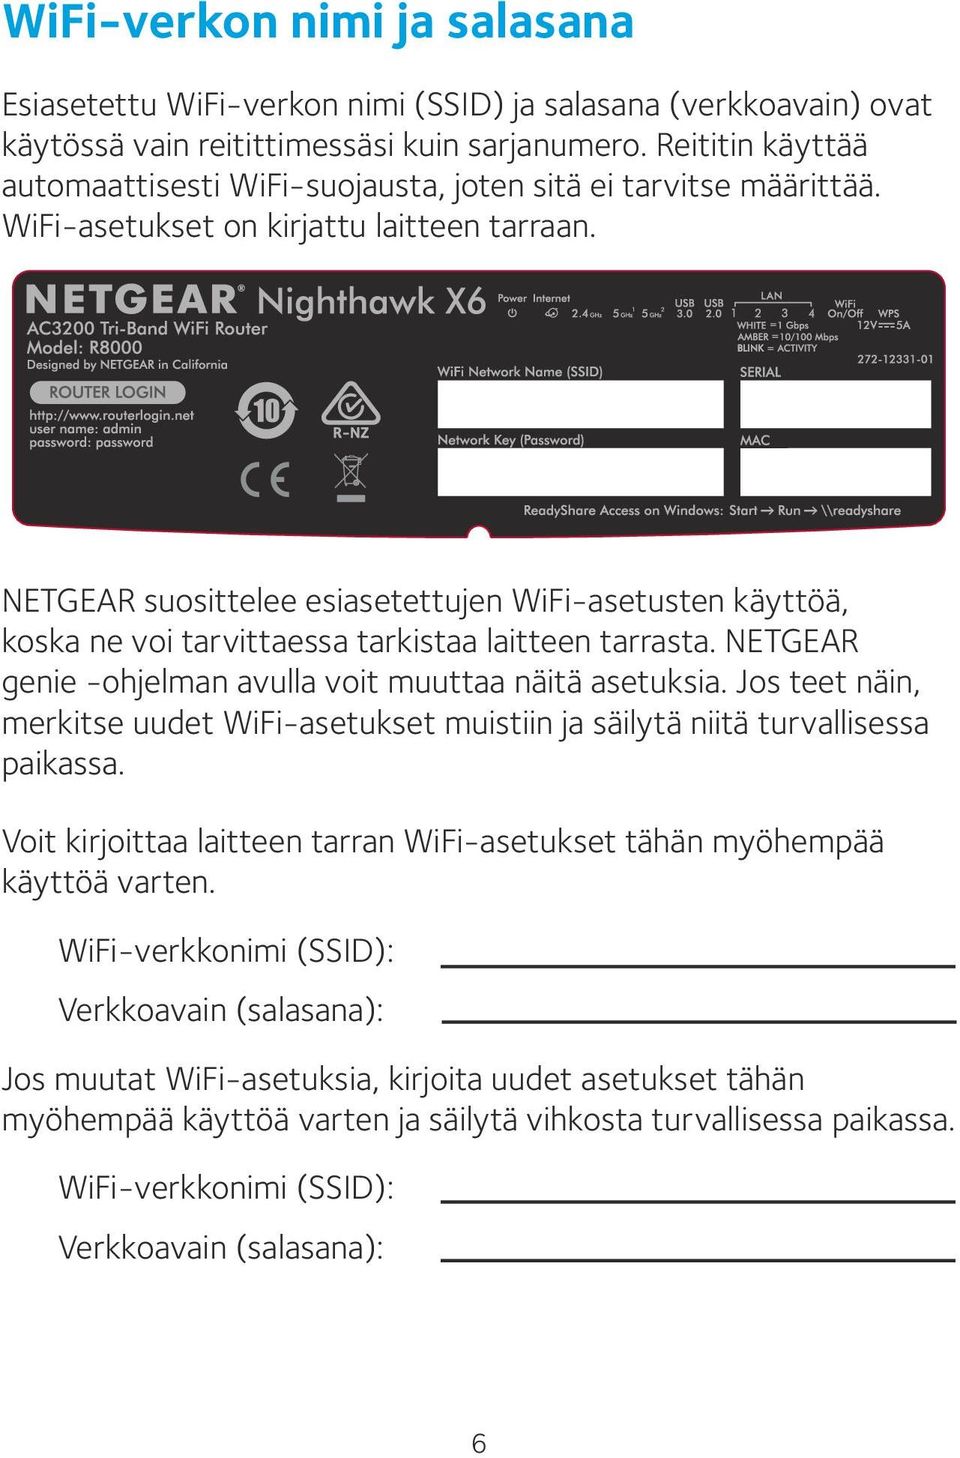 NETGEAR suosittelee esiasetettujen WiFi-asetusten käyttöä, koska ne voi tarvittaessa tarkistaa laitteen tarrasta. NETGEAR genie -ohjelman avulla voit muuttaa näitä asetuksia.